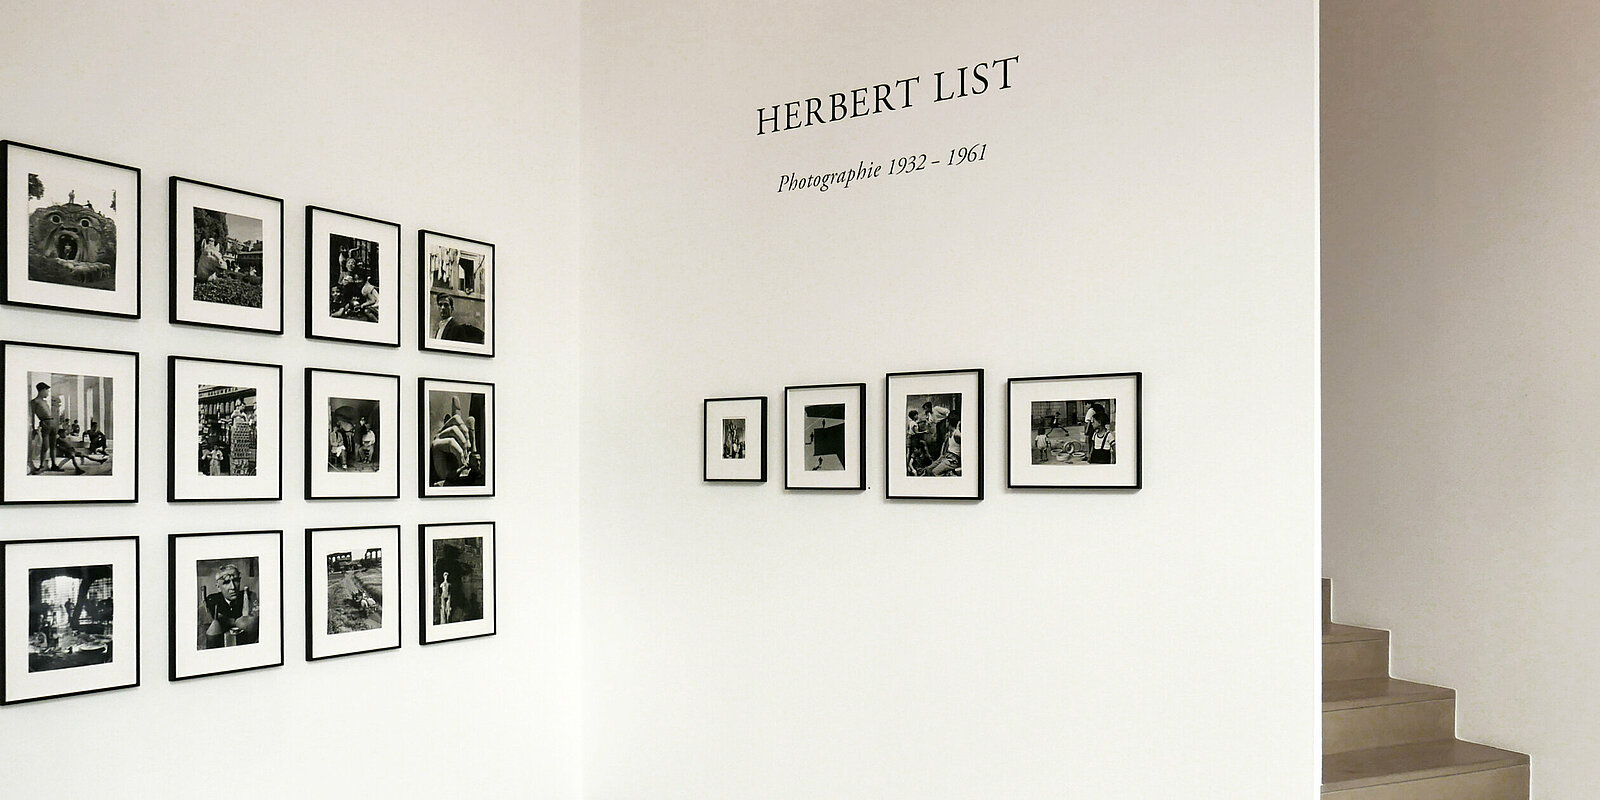 Vue d' installation, Herbert List, Photographie 1932-1961, Galerie Karsten Greve AG, St. Moritz, 2022